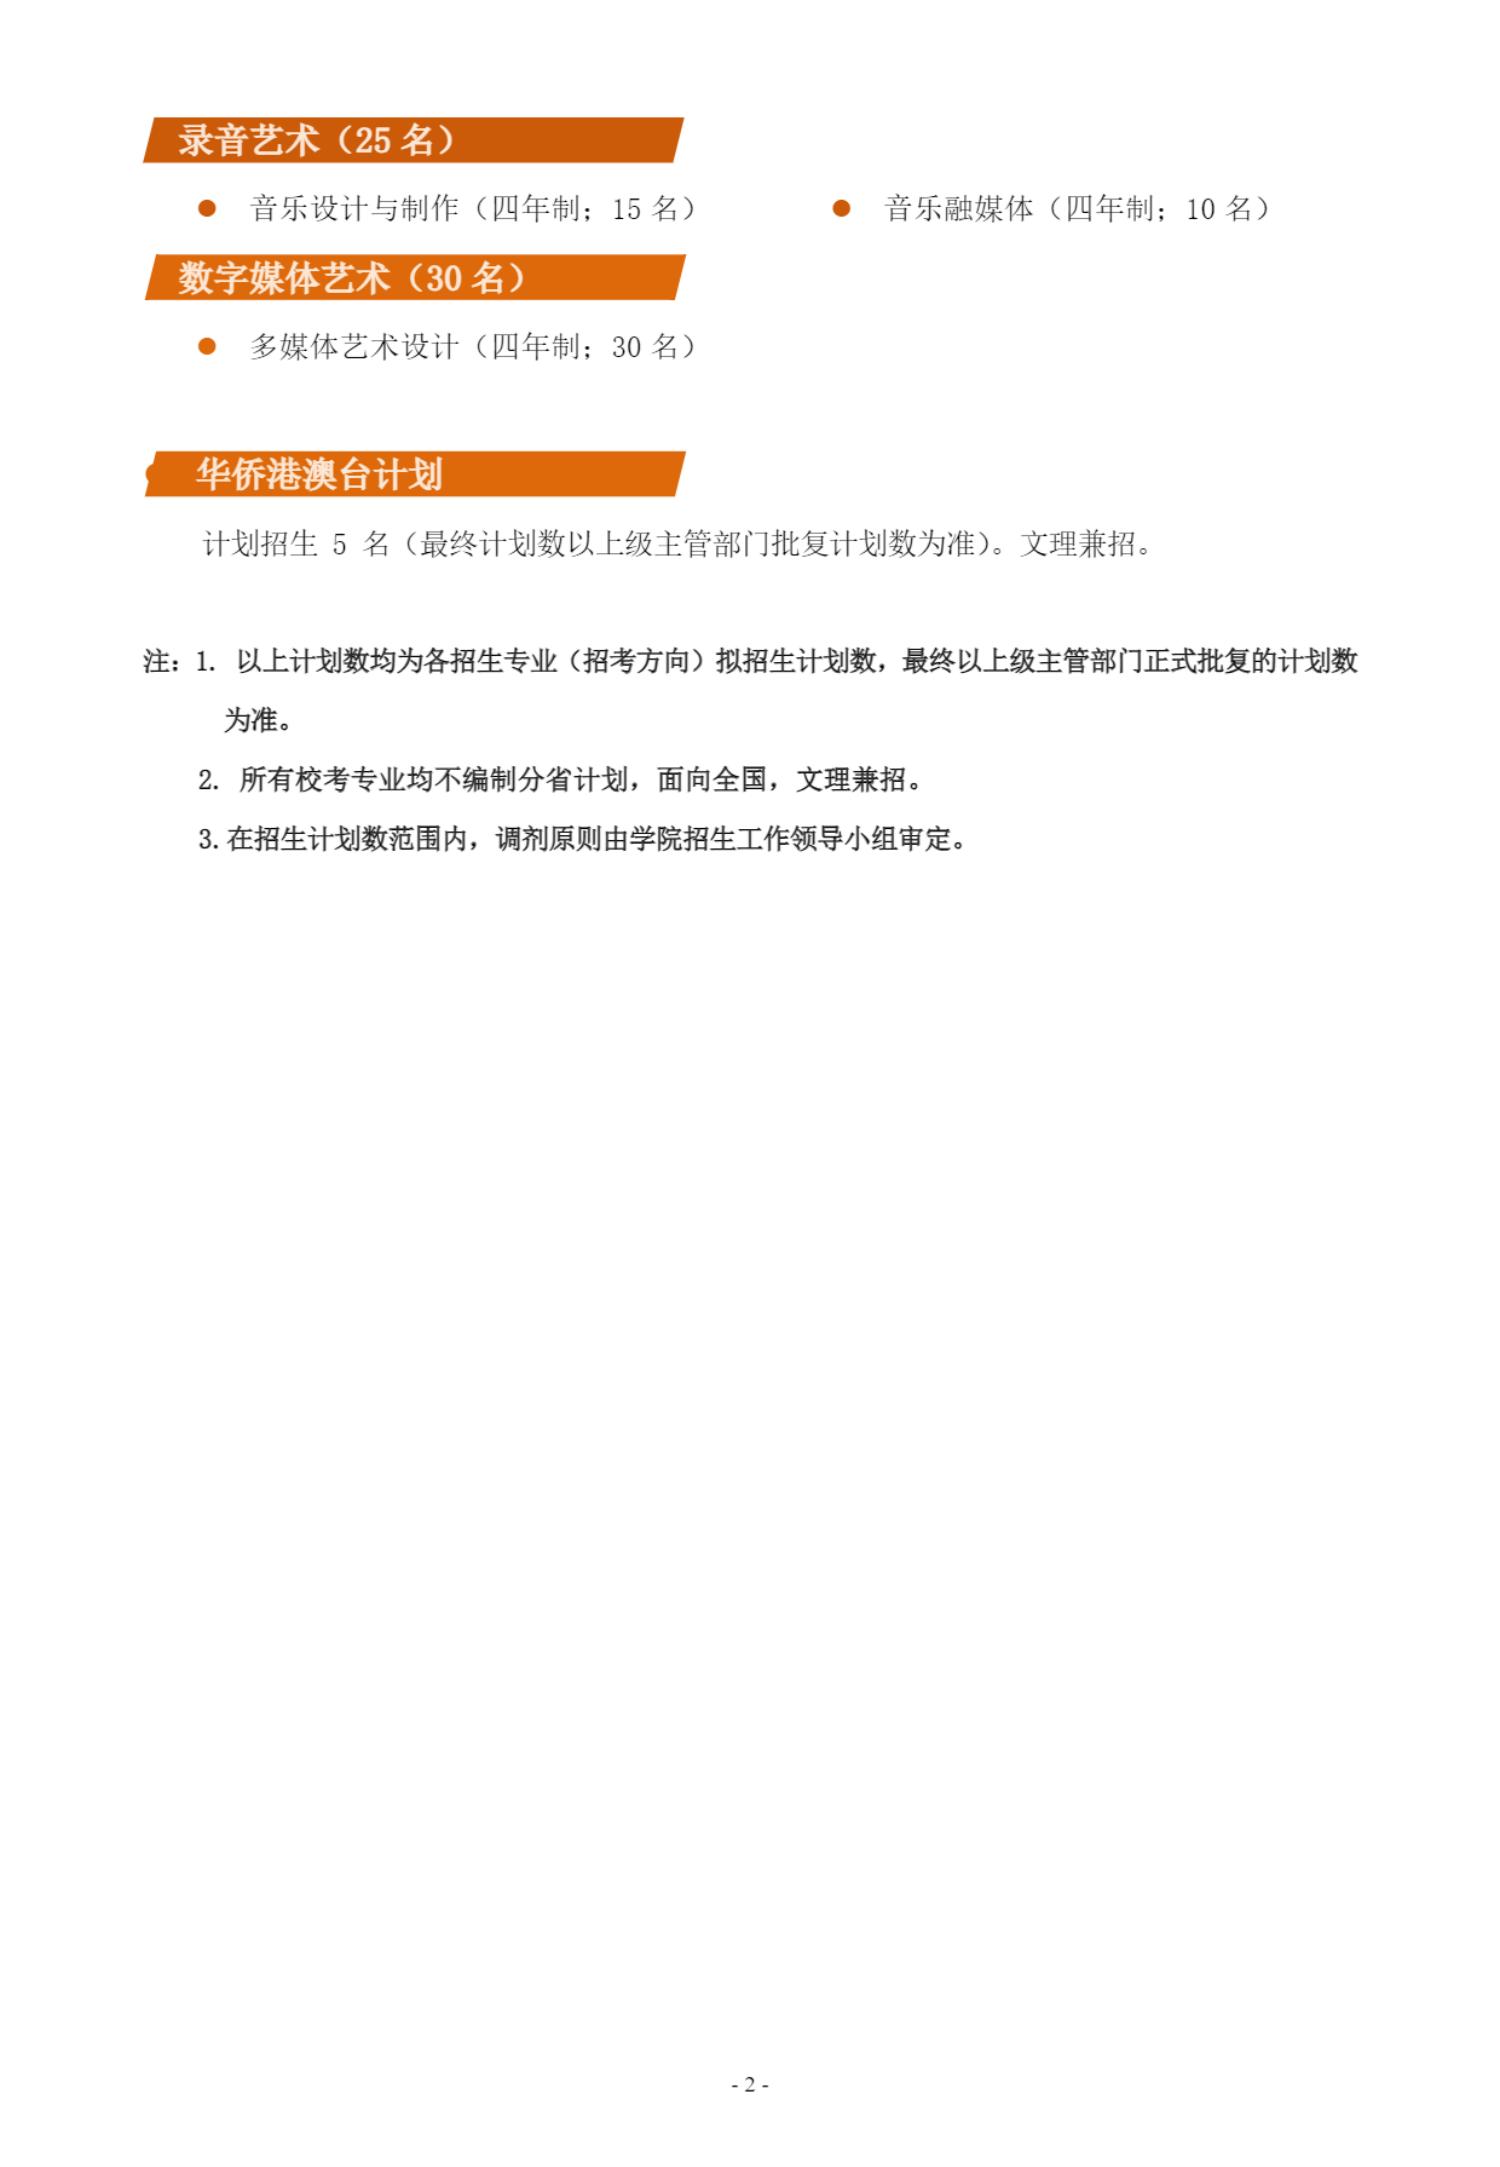 上海音乐学院本科艺术类校考专业招生简章_02.jpg